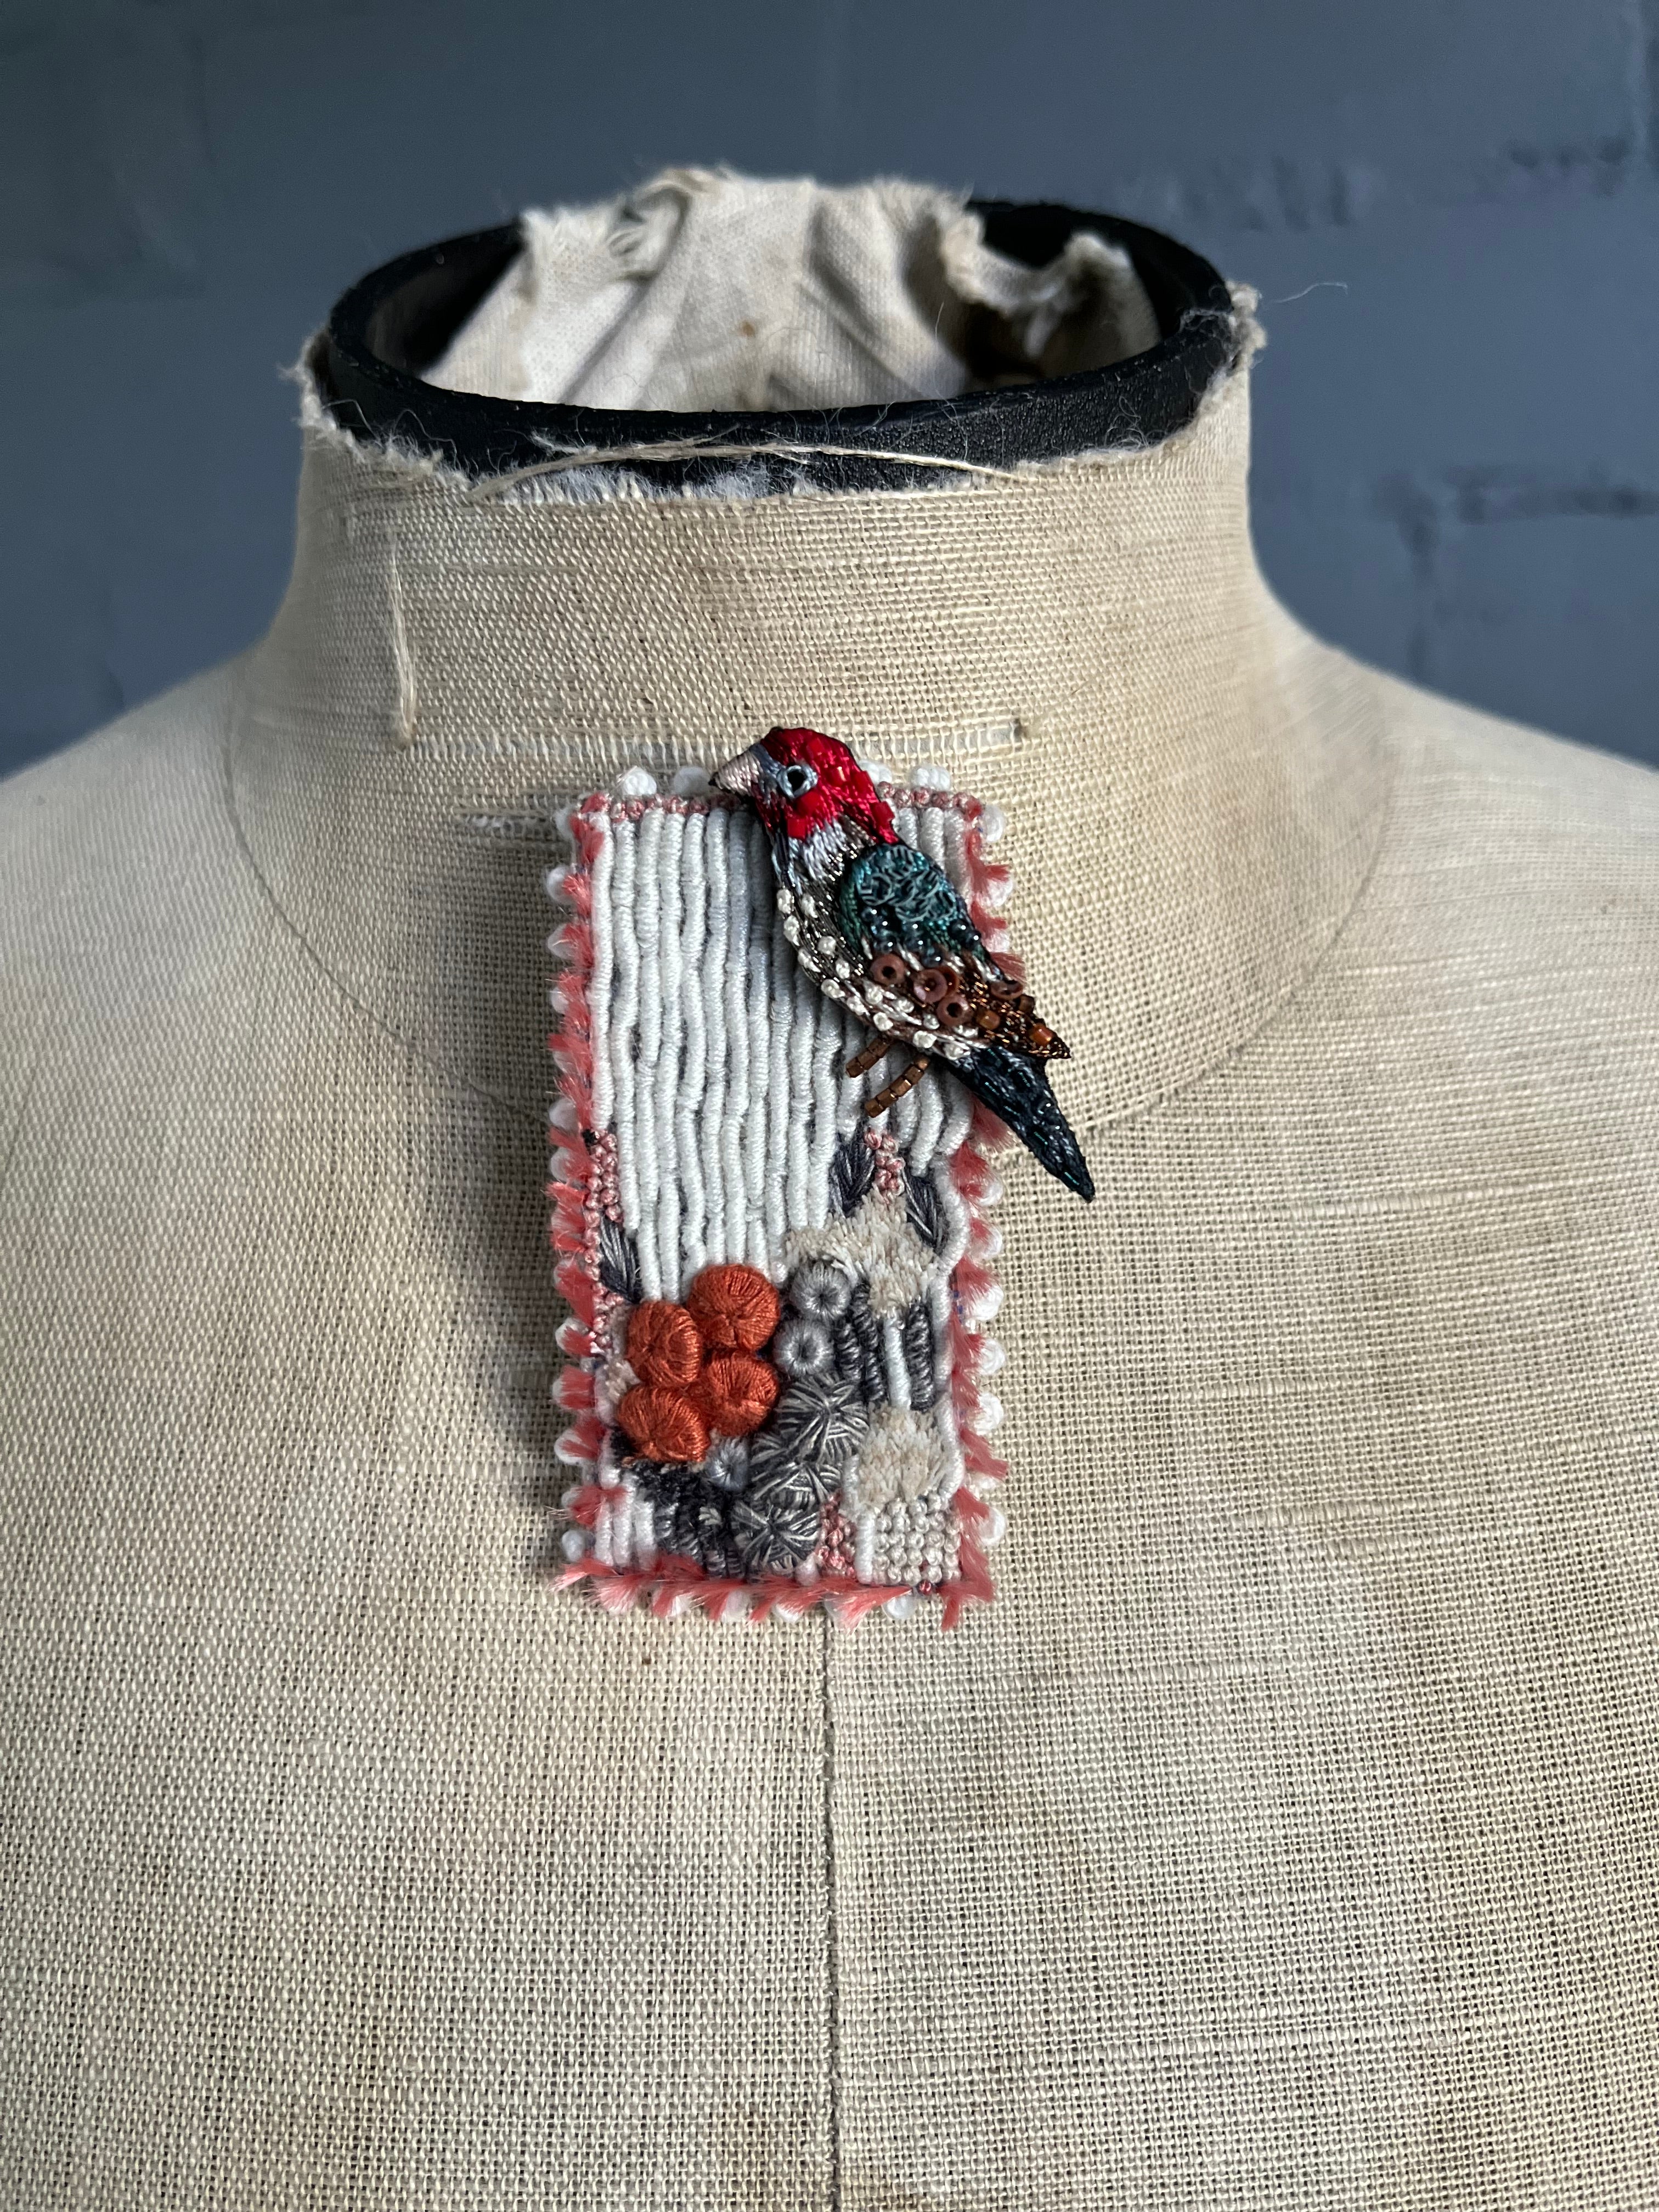 Handmade Brooch Pin - Songbird in the Shrubs